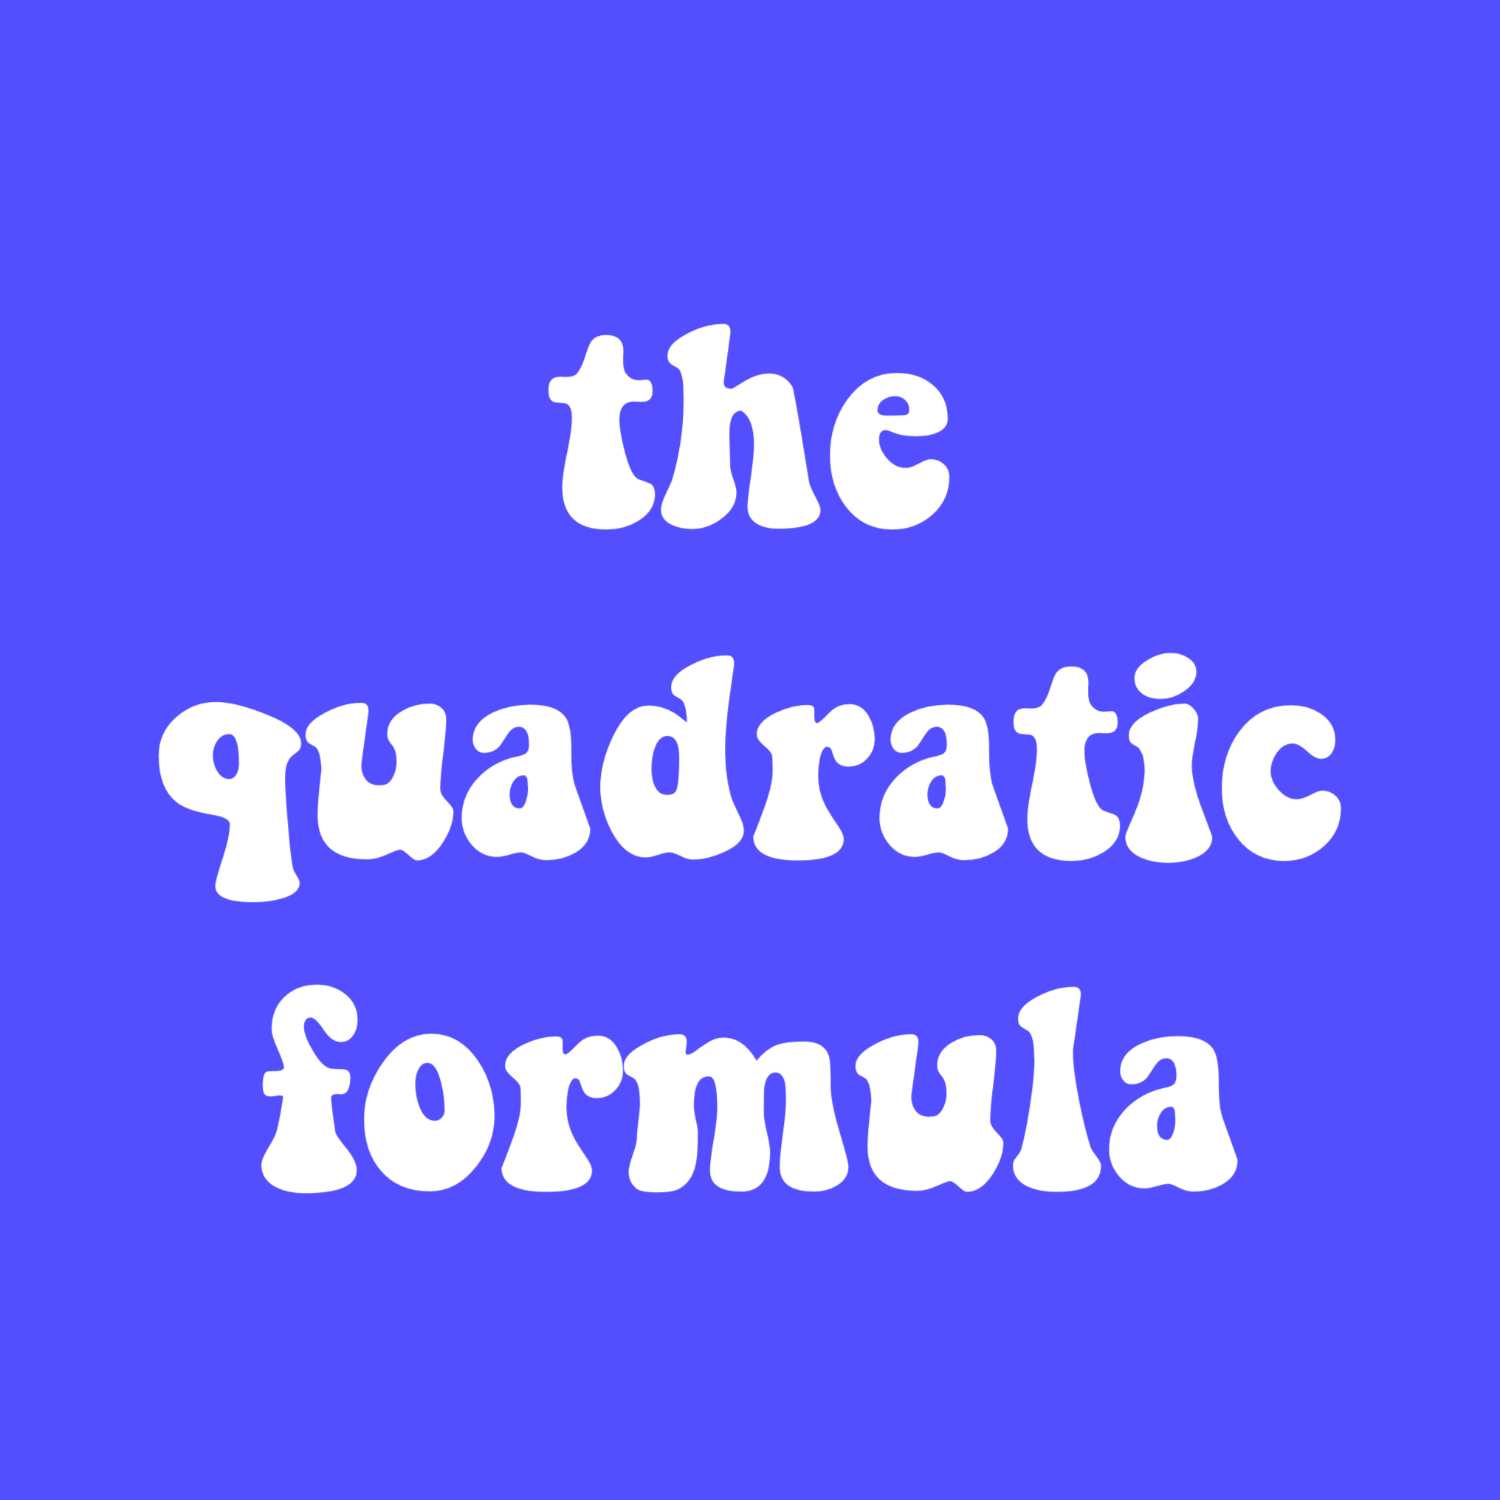 Quadratic Formula Song - Pop Goes The Weasel